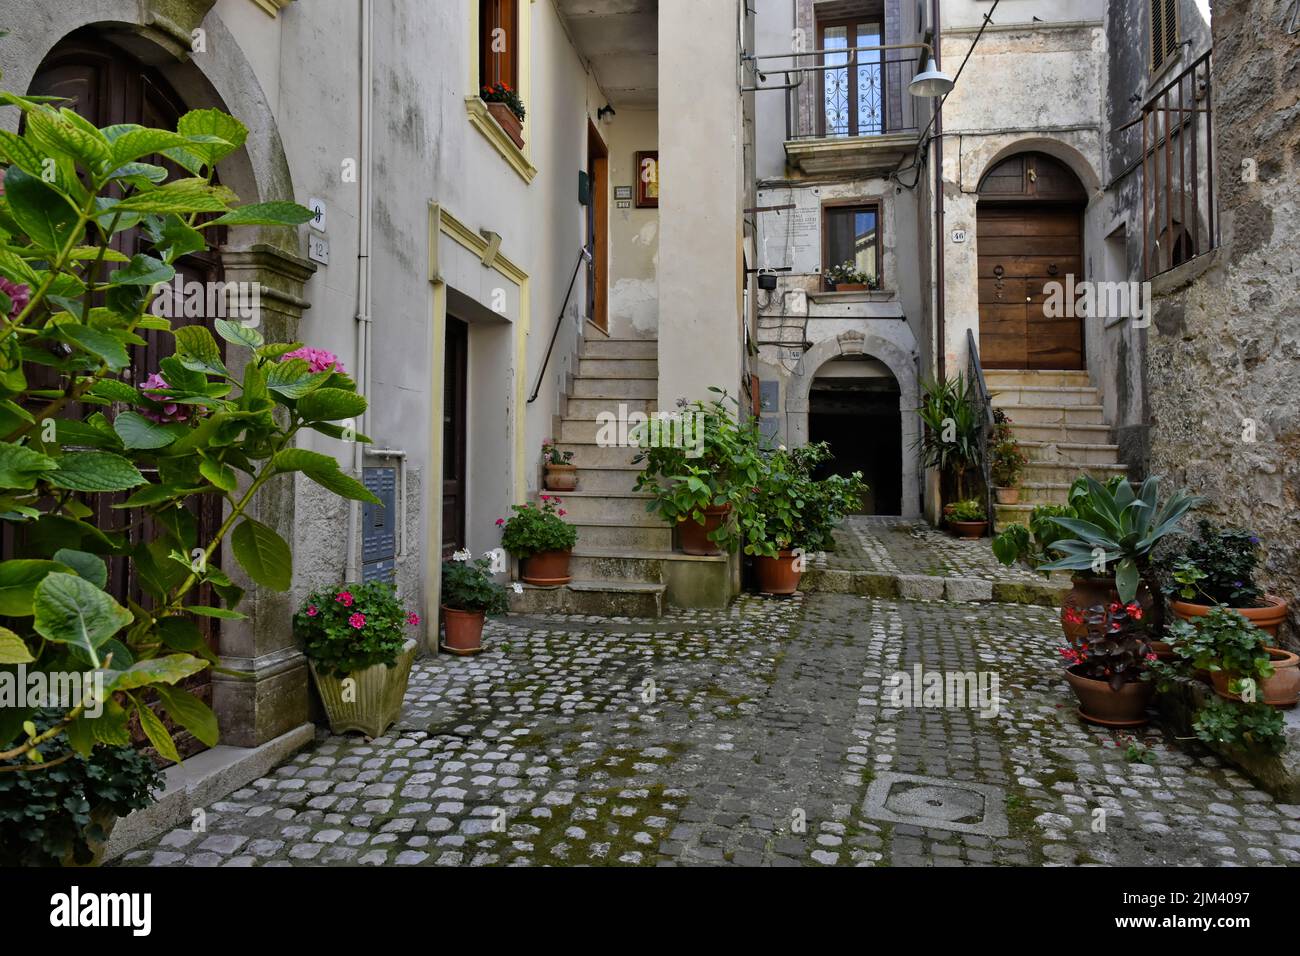 The streets of Lenola. Province of Latina, Lazio region, central Italy. Stock Photo